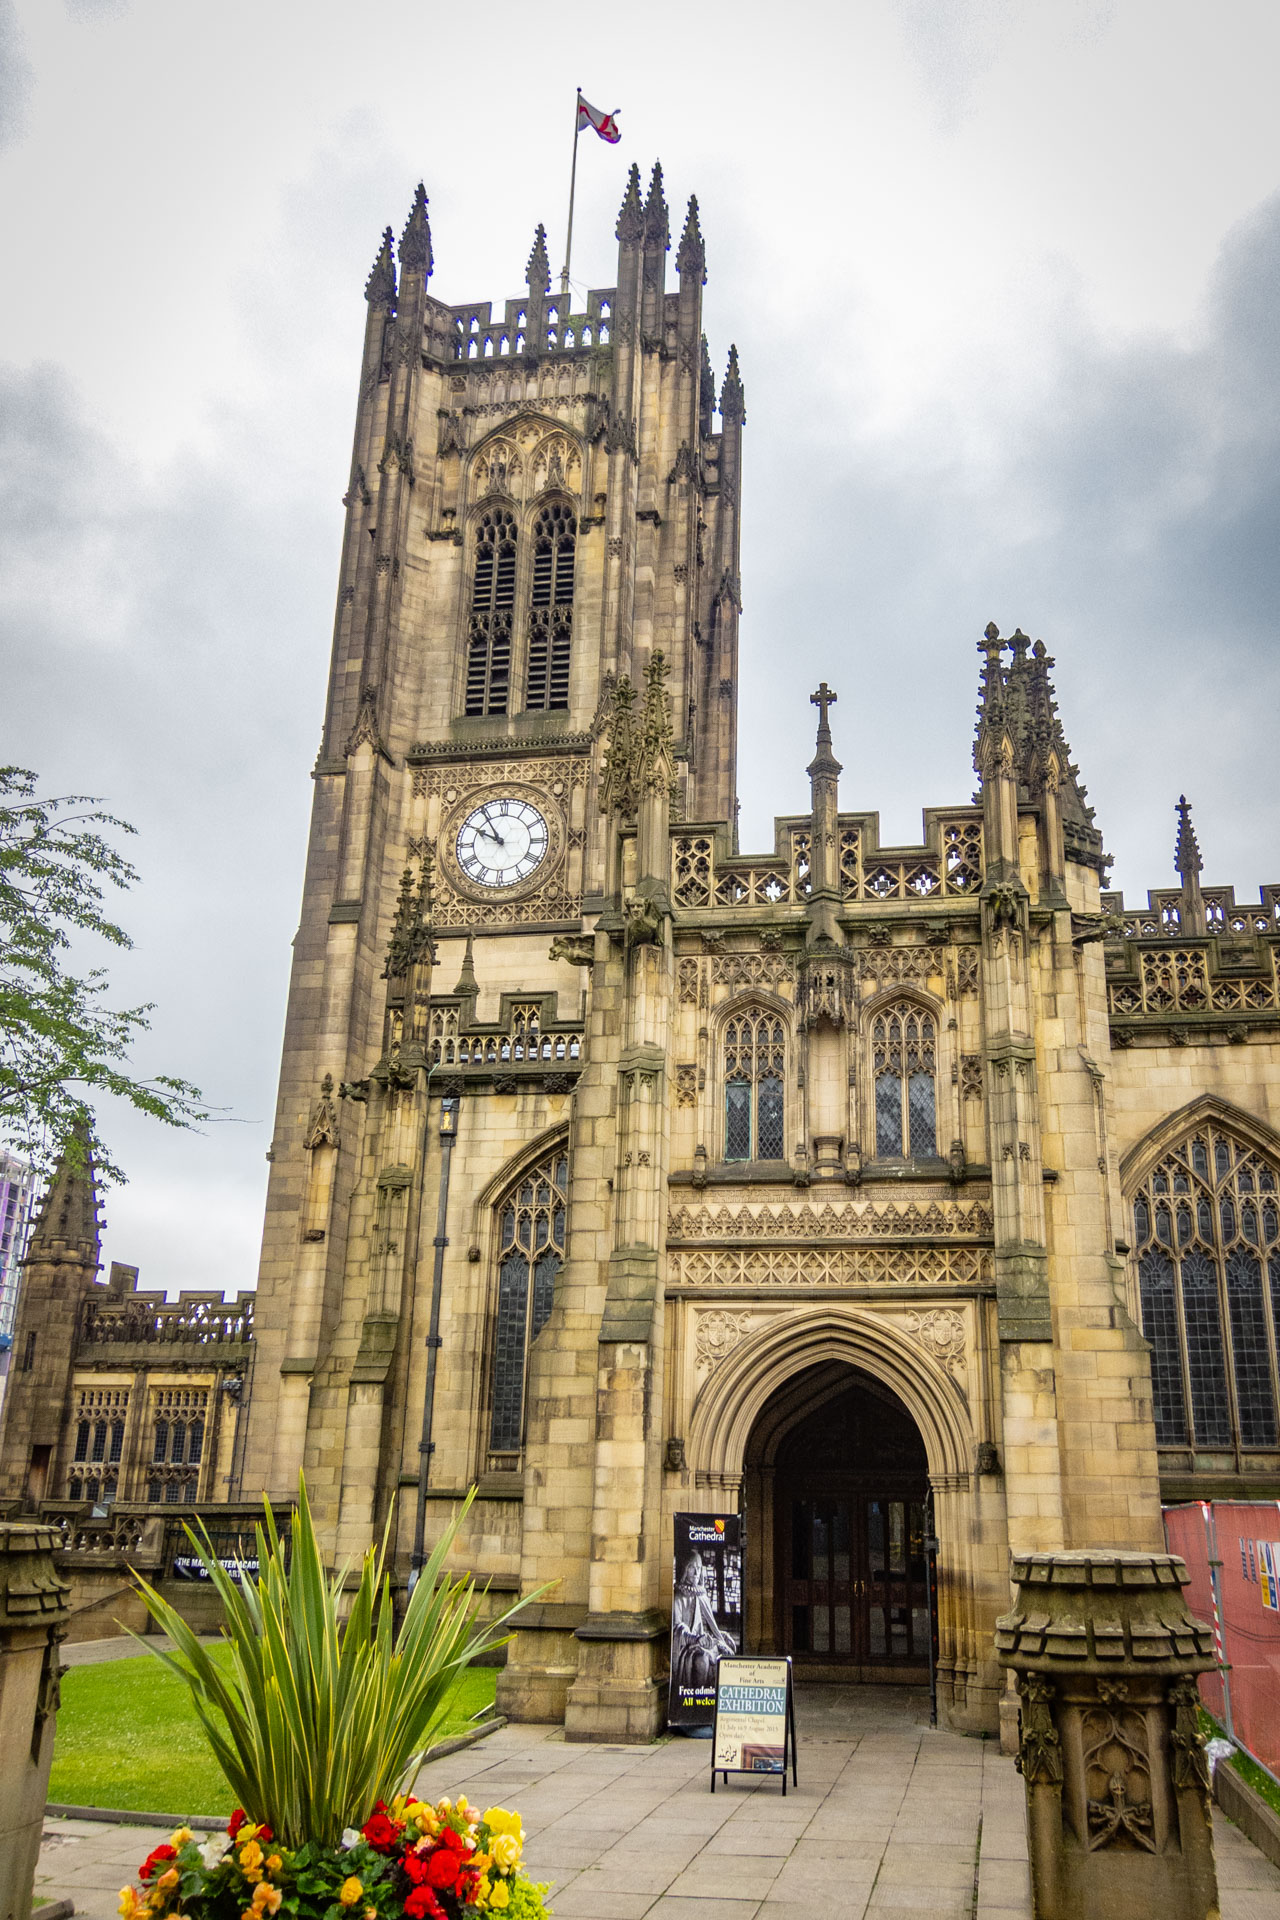 De kathedraal van Manchester op een bewolkte dag gezien vanaf de poort aan de voorzijde, met de toren links. Wat te doen in Manchester?